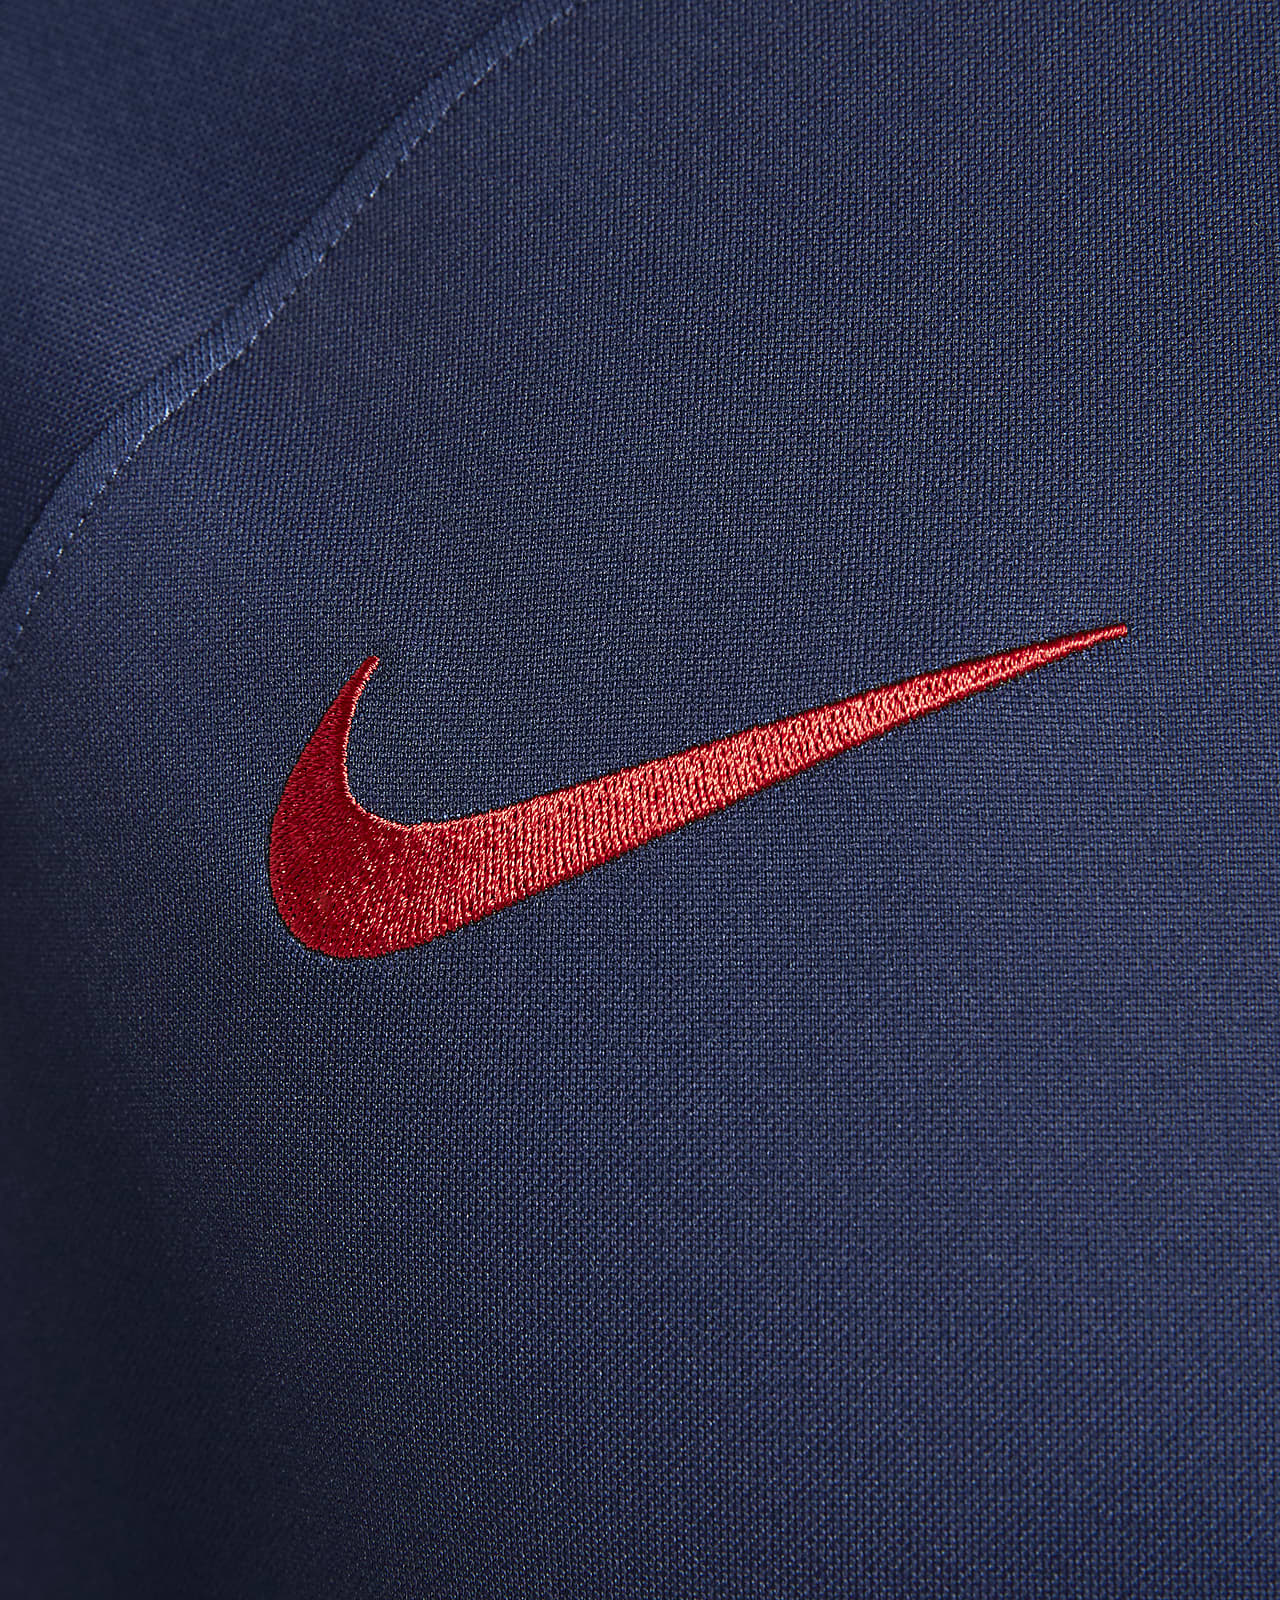 Maillot PSG 23/24 : ce détail inédit autour de la virgule de Nike